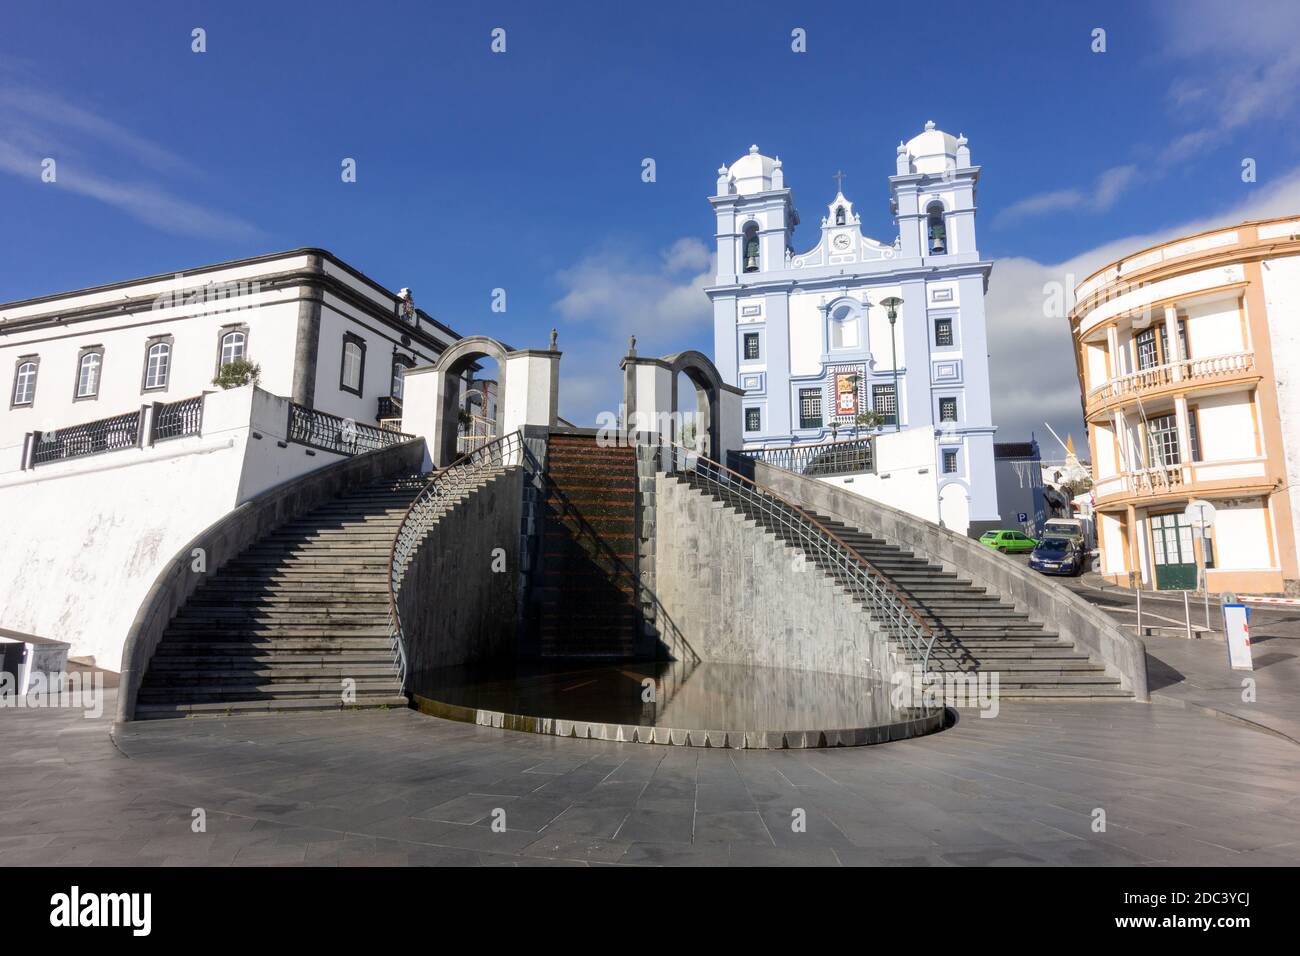 Les marches vous permettent de rejoindre l'église de la Miséricorde (Igreja da Misericórdia), dans le port d'Angra do Heroismo, sur l'île de Terceira, dans les Açores, Portugal Banque D'Images